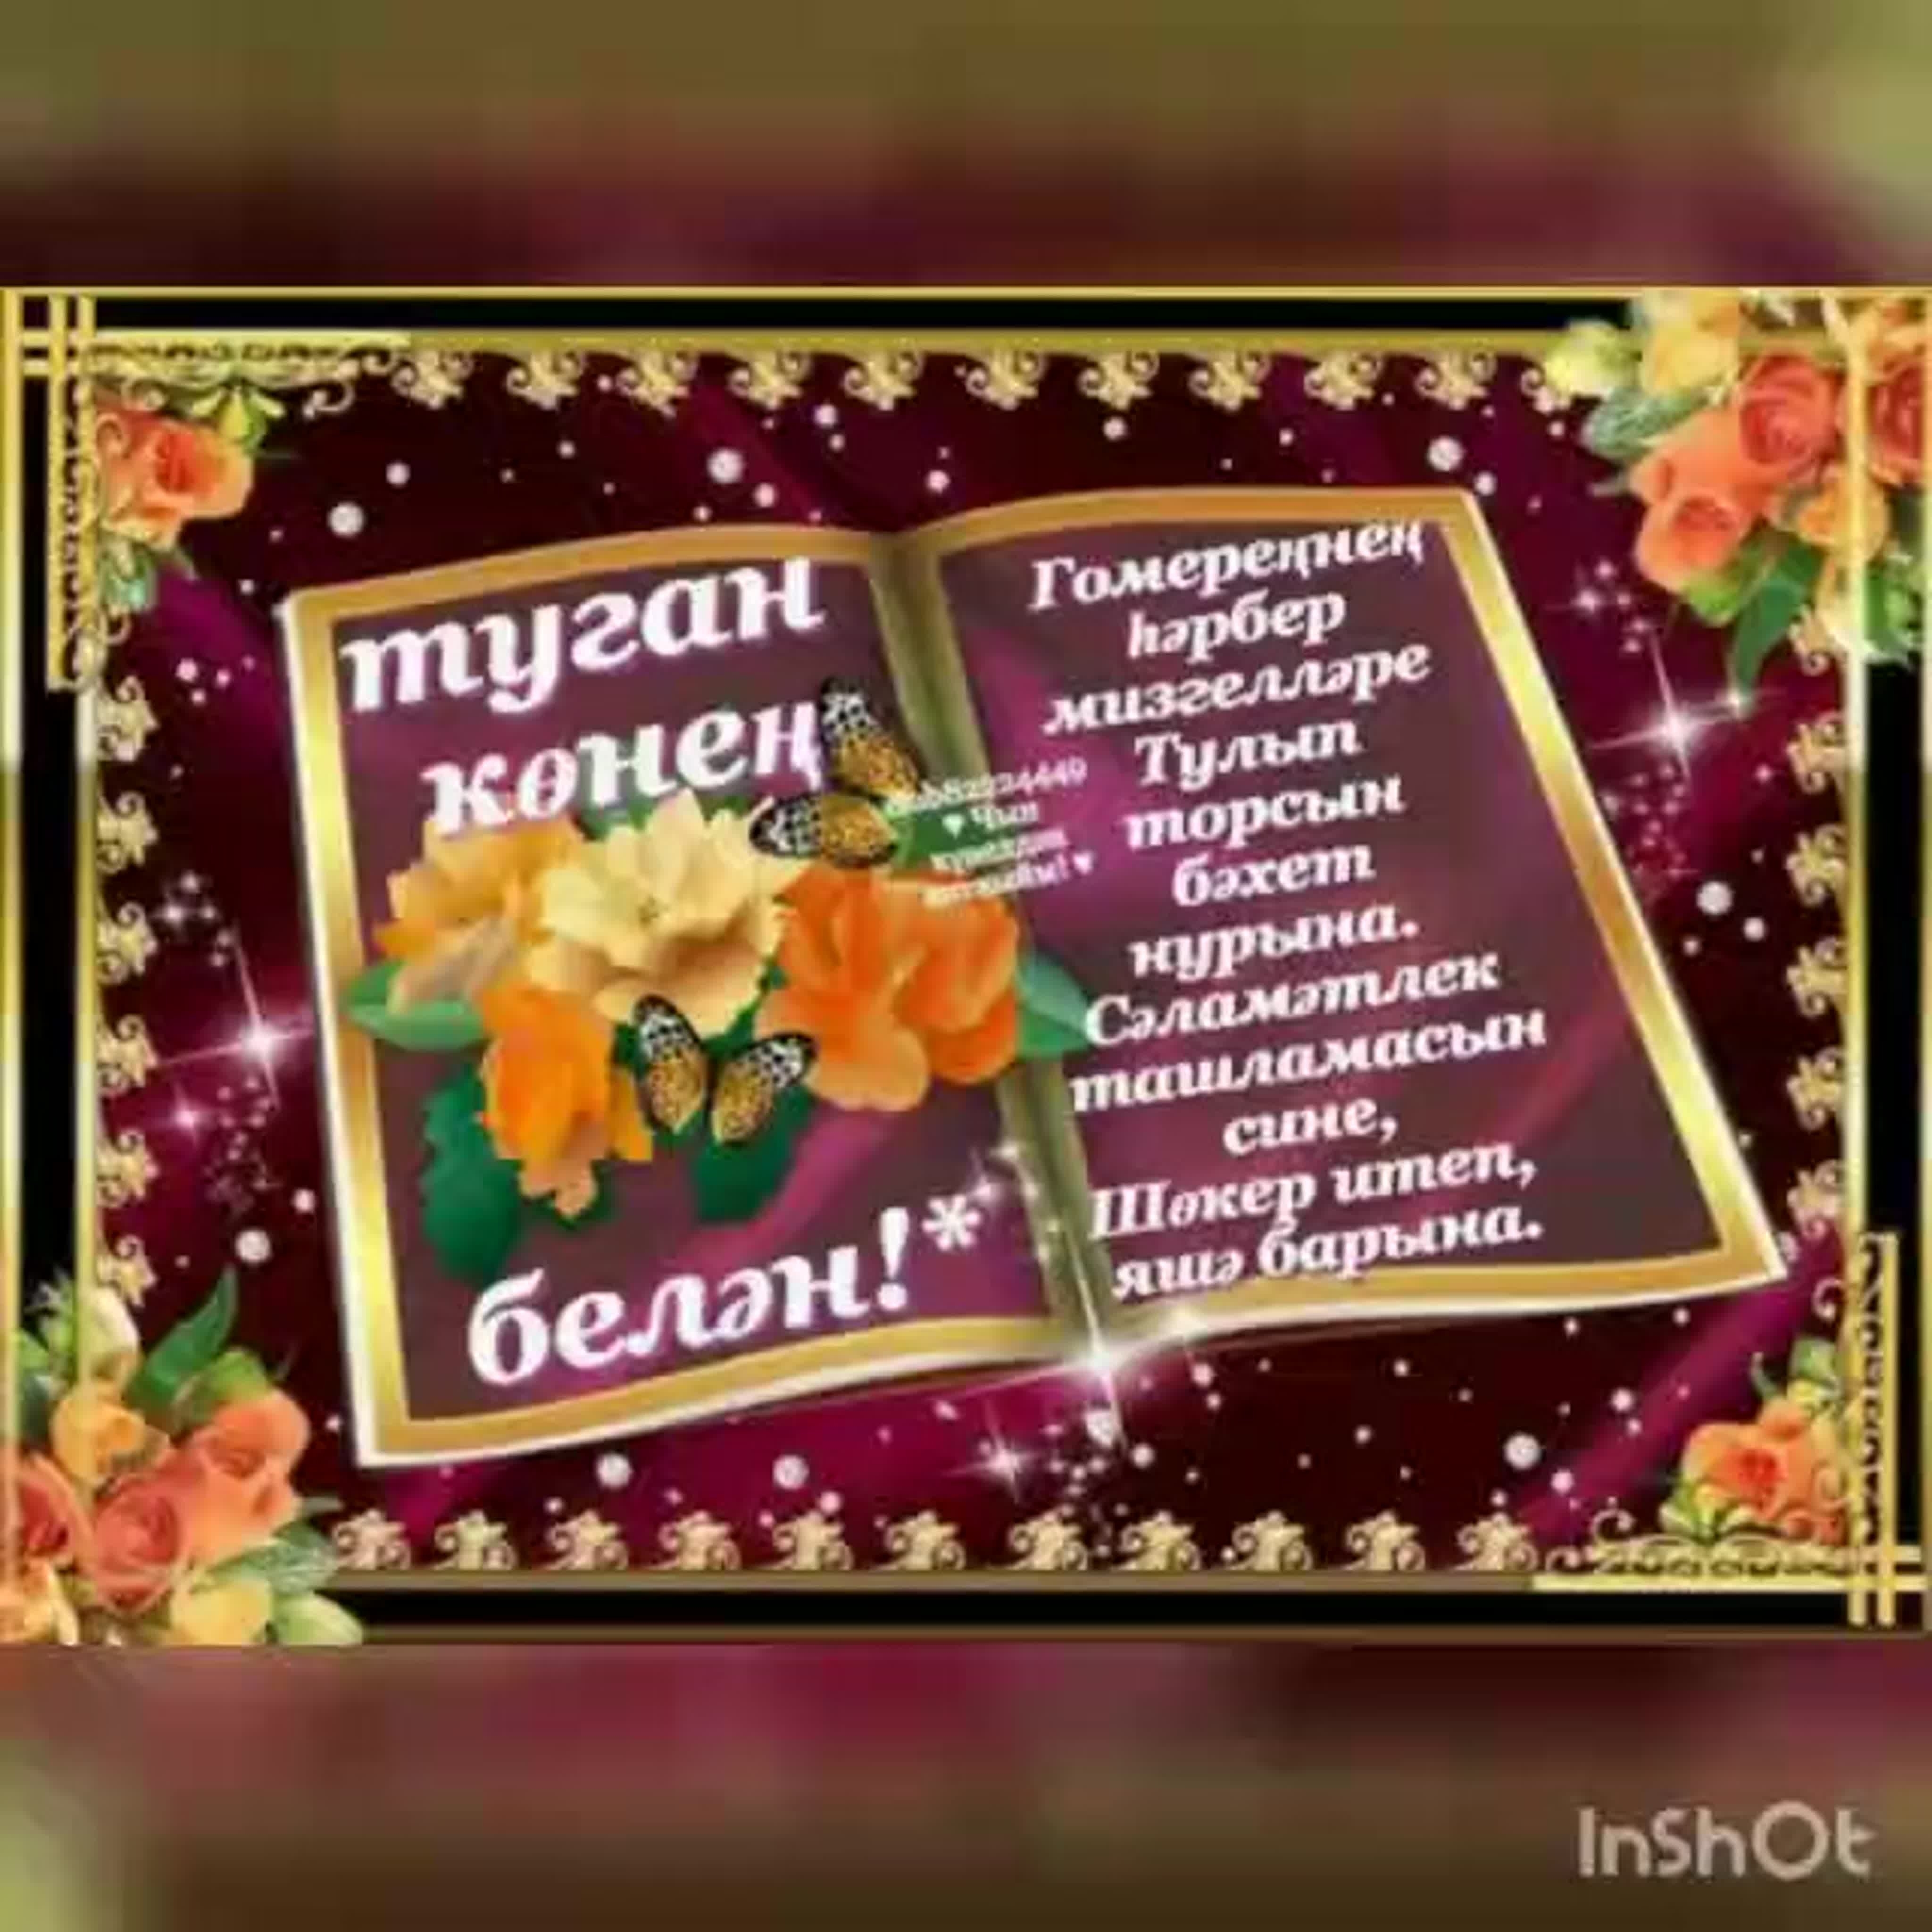 Голосовые поздравления - Поздравления с днём рождения на татарском языке